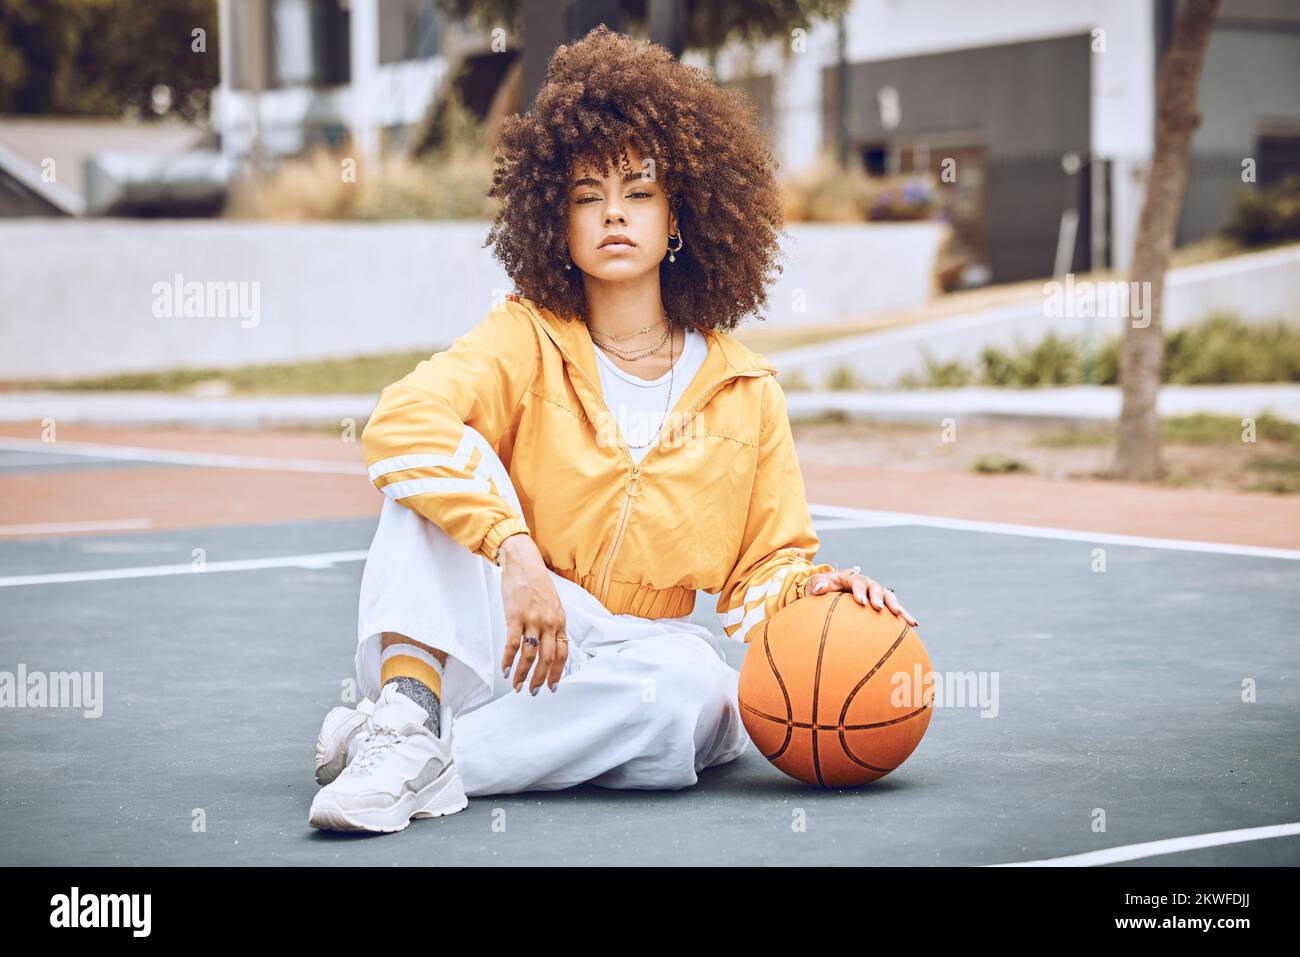 Jeune, à la mode et belle femme noire joueur de basket-ball ou athlète avec  afro assis sur un terrain. Portrait de la personne fraîche et edgy dans un  Photo Stock - Alamy